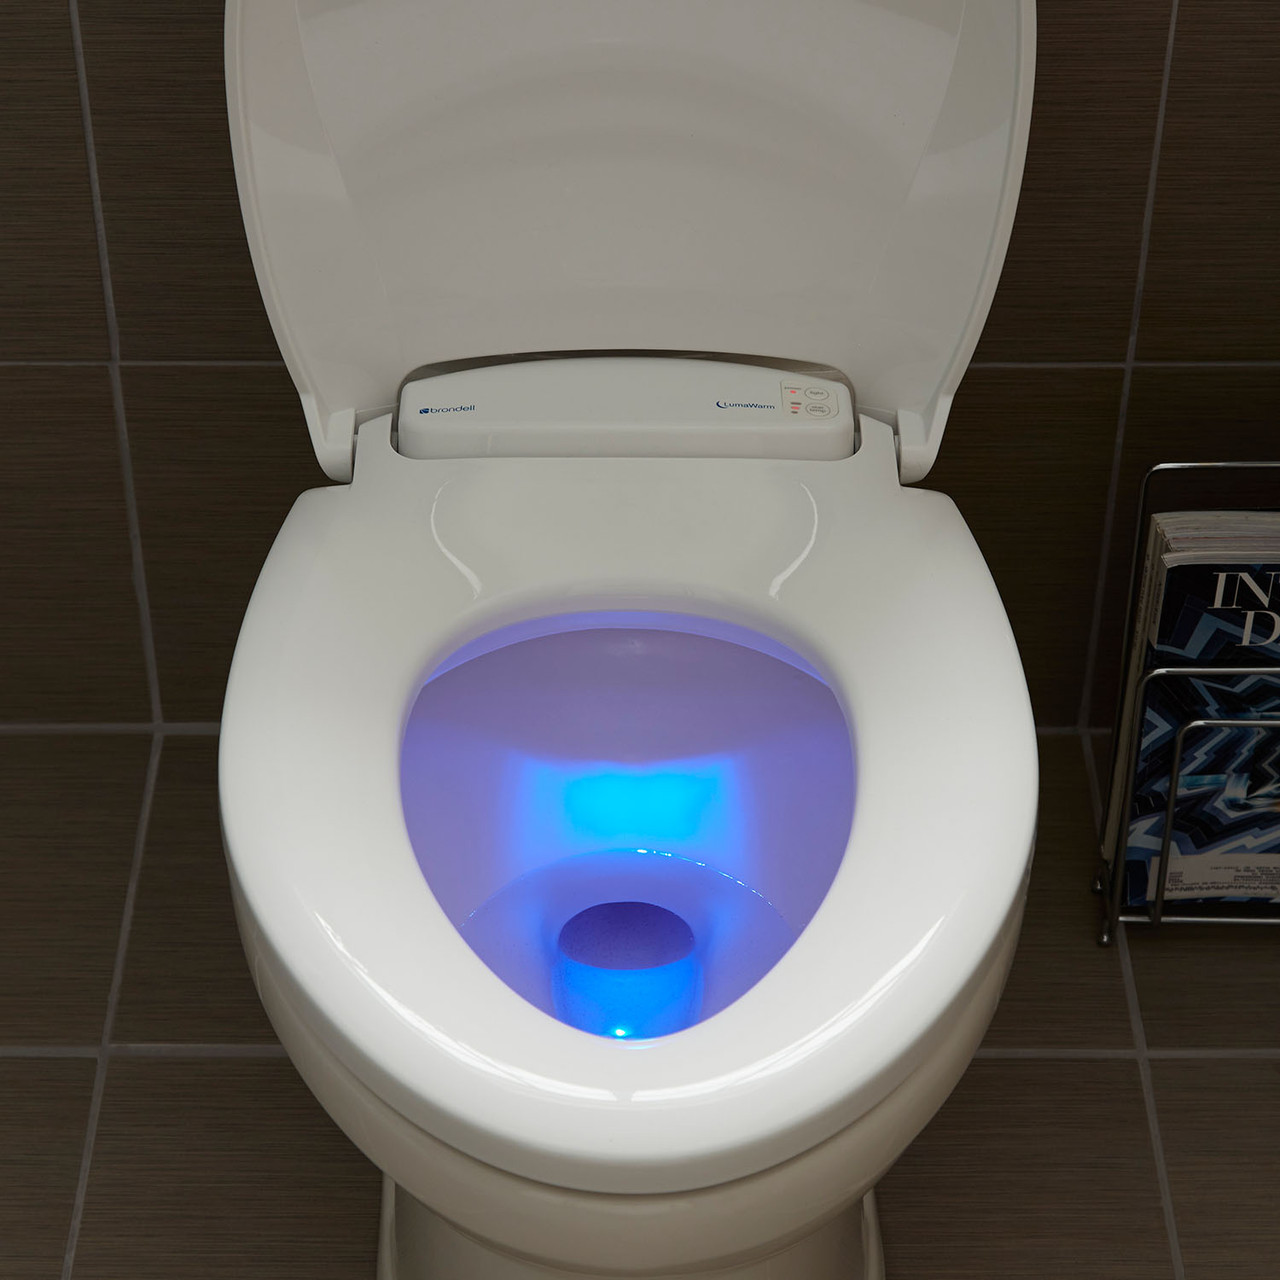 purple toilet seat